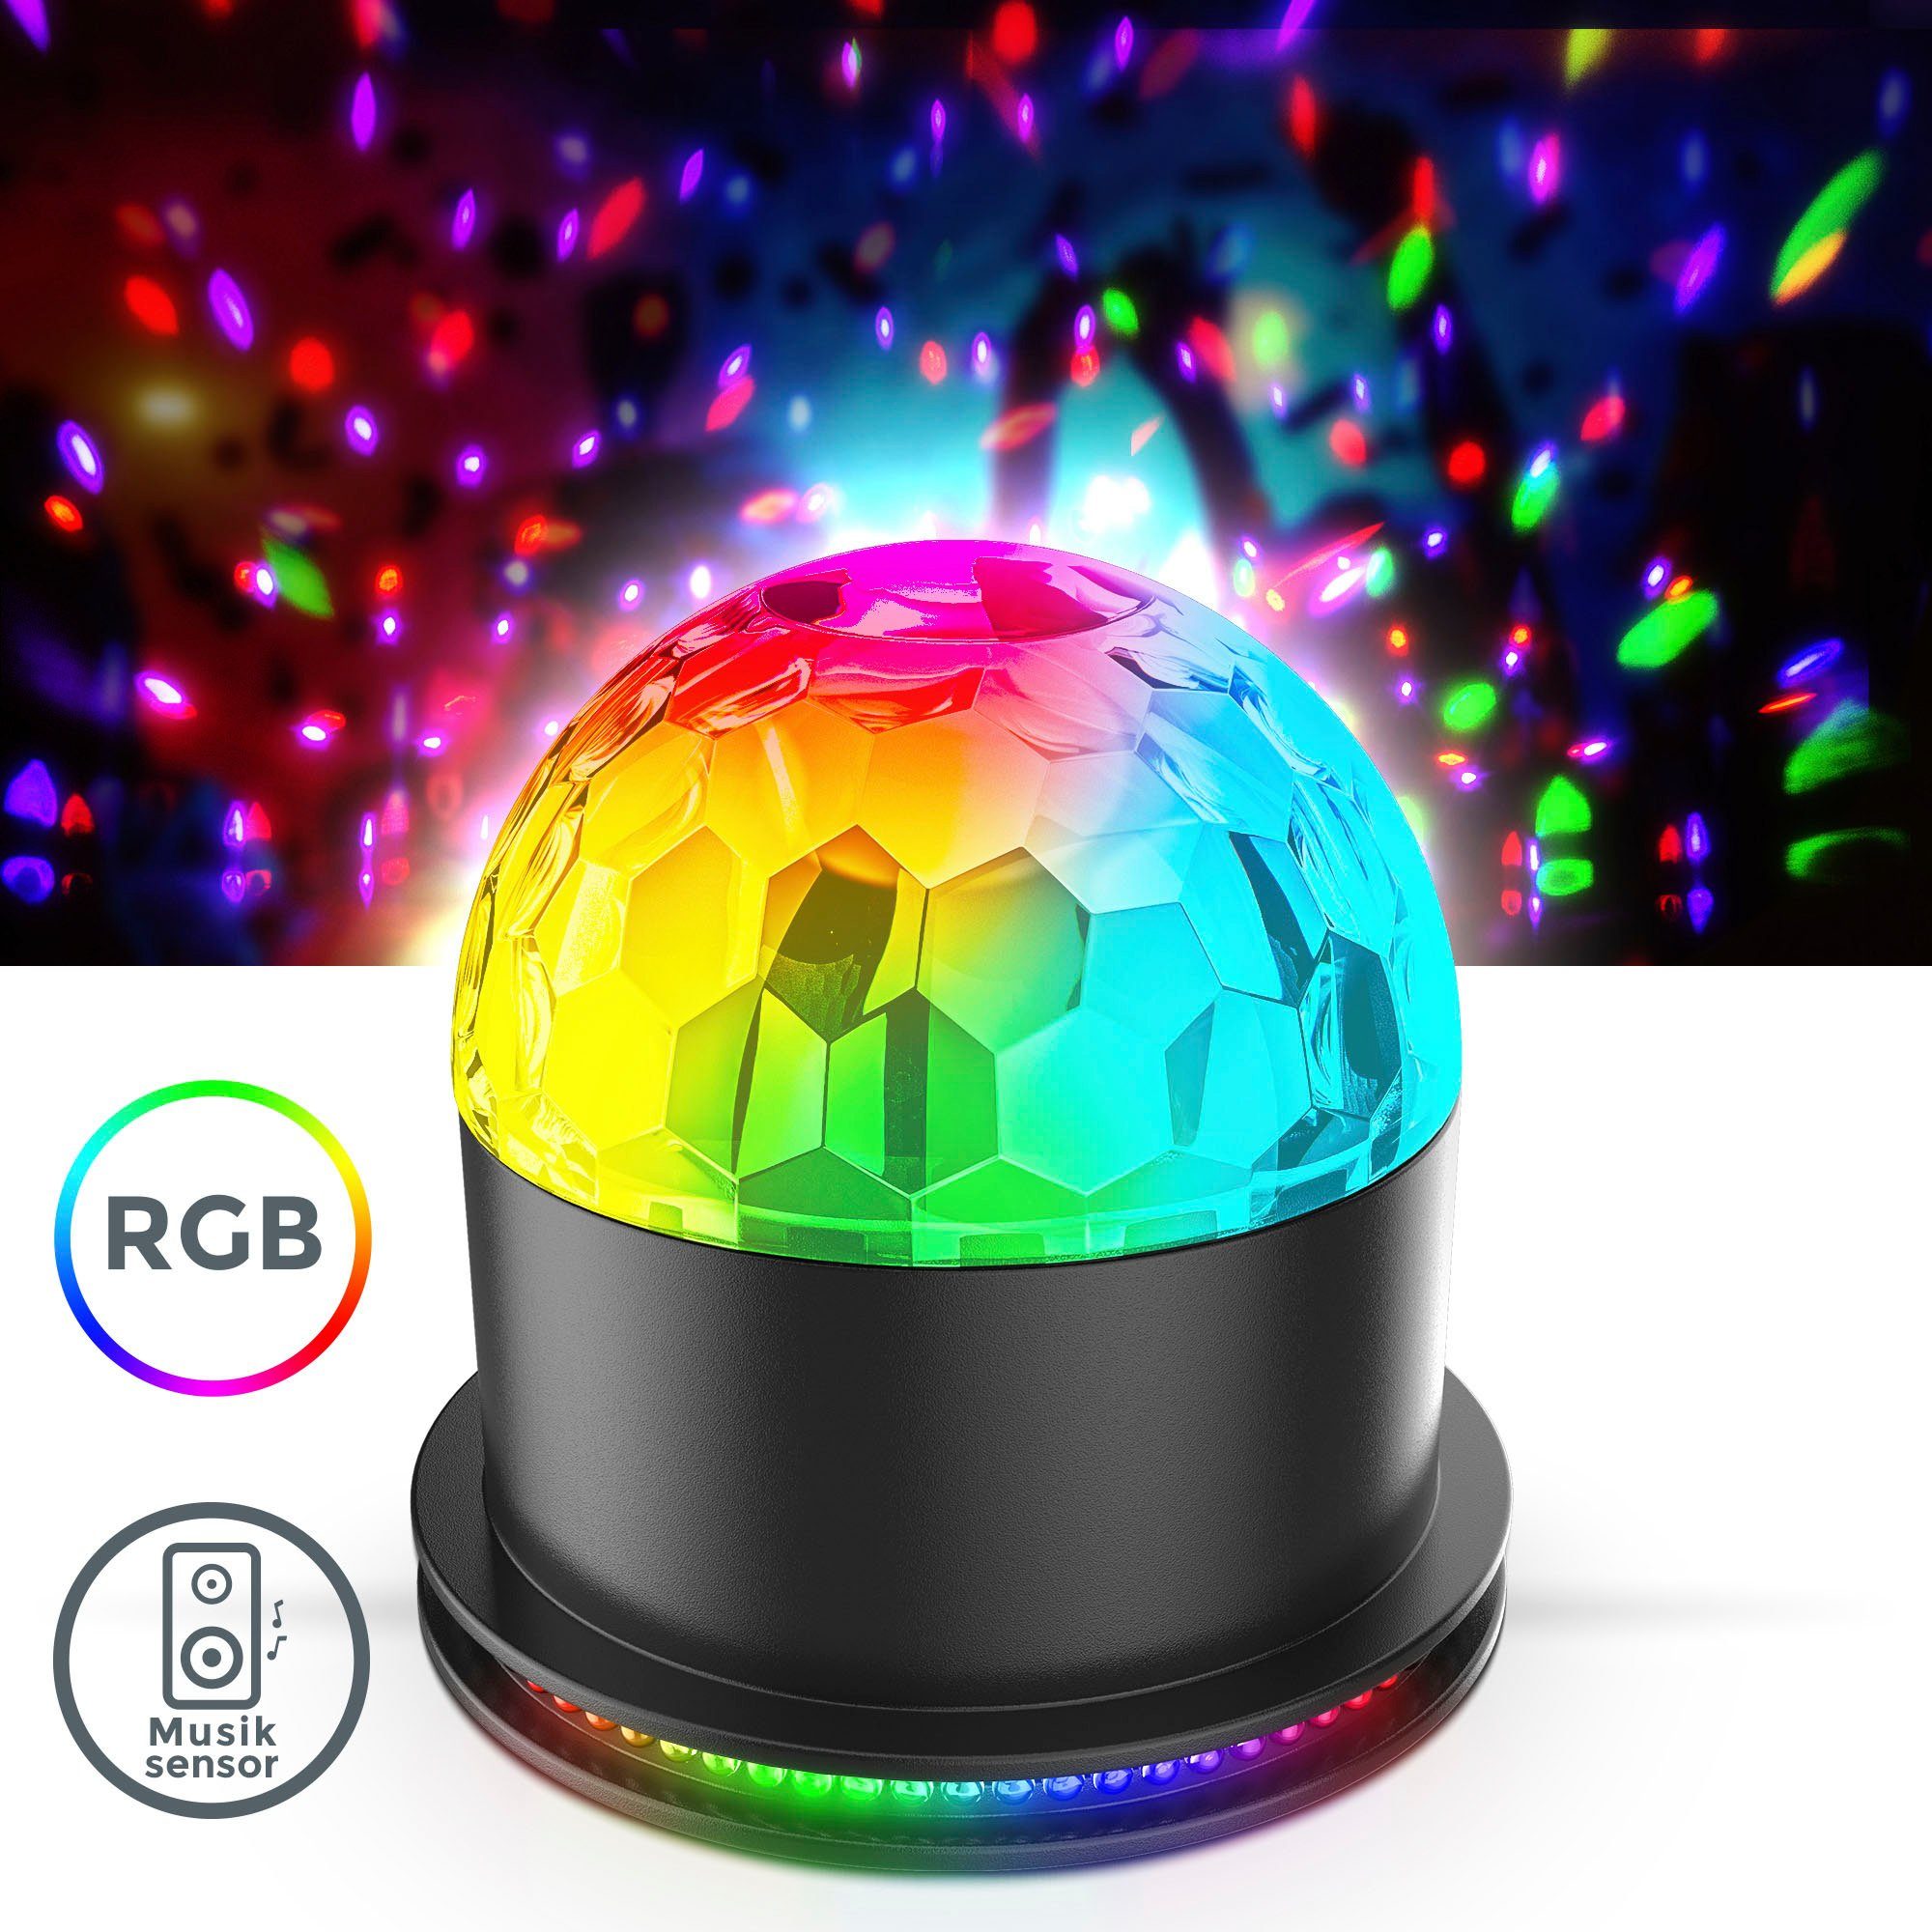 LED mit integriert, BK_GD1327 fest Tischlampe Discolicht, RGB, Partylicht, LED Partyleuchte, Musiksensor, Motivstrahler Farbwechsel, B.K.Licht RGB, LED RGB